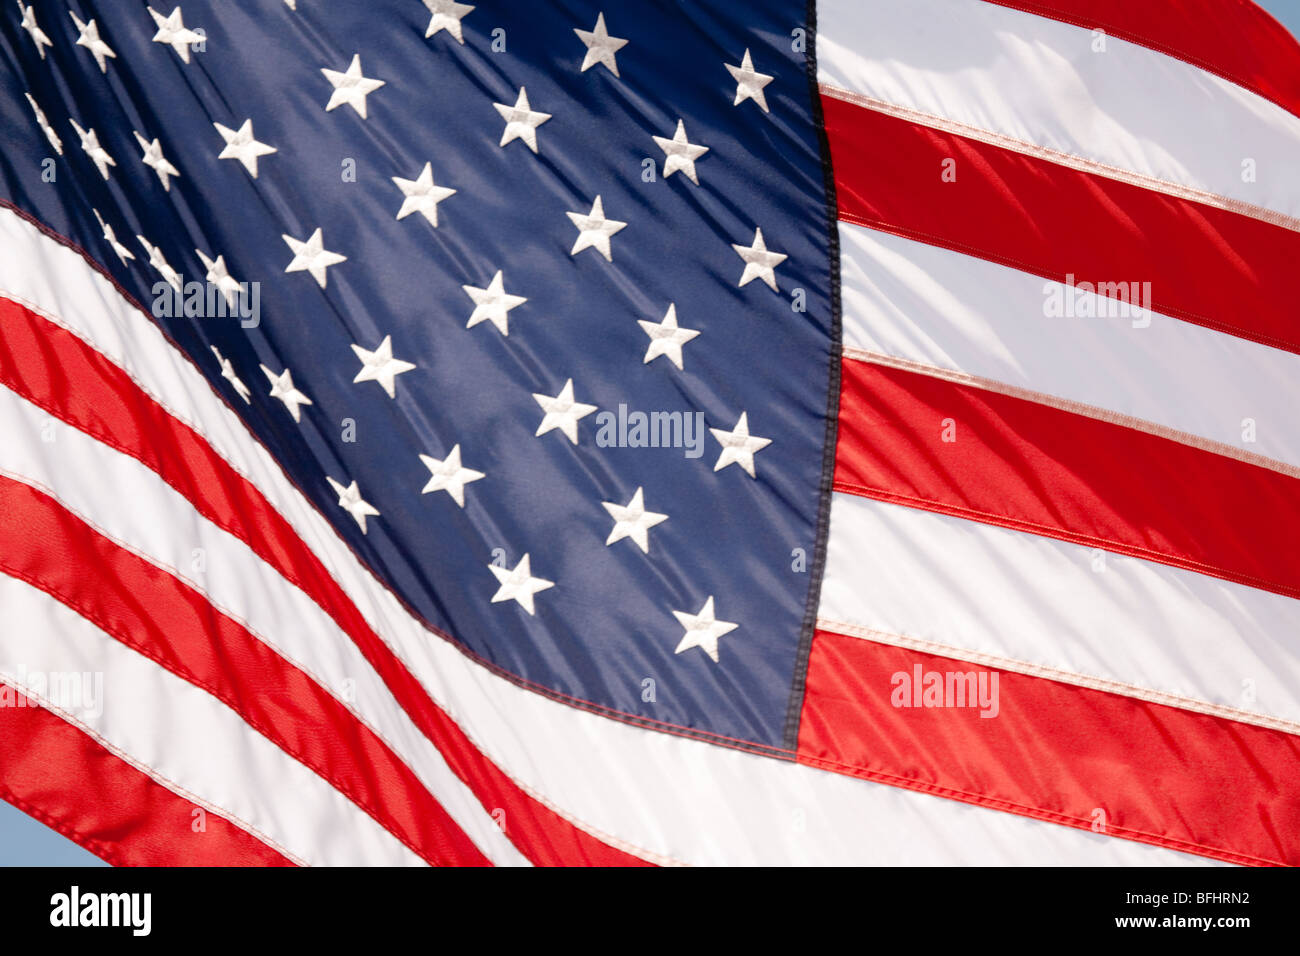 American Flag flying, Washington DC, USA Stock Photo